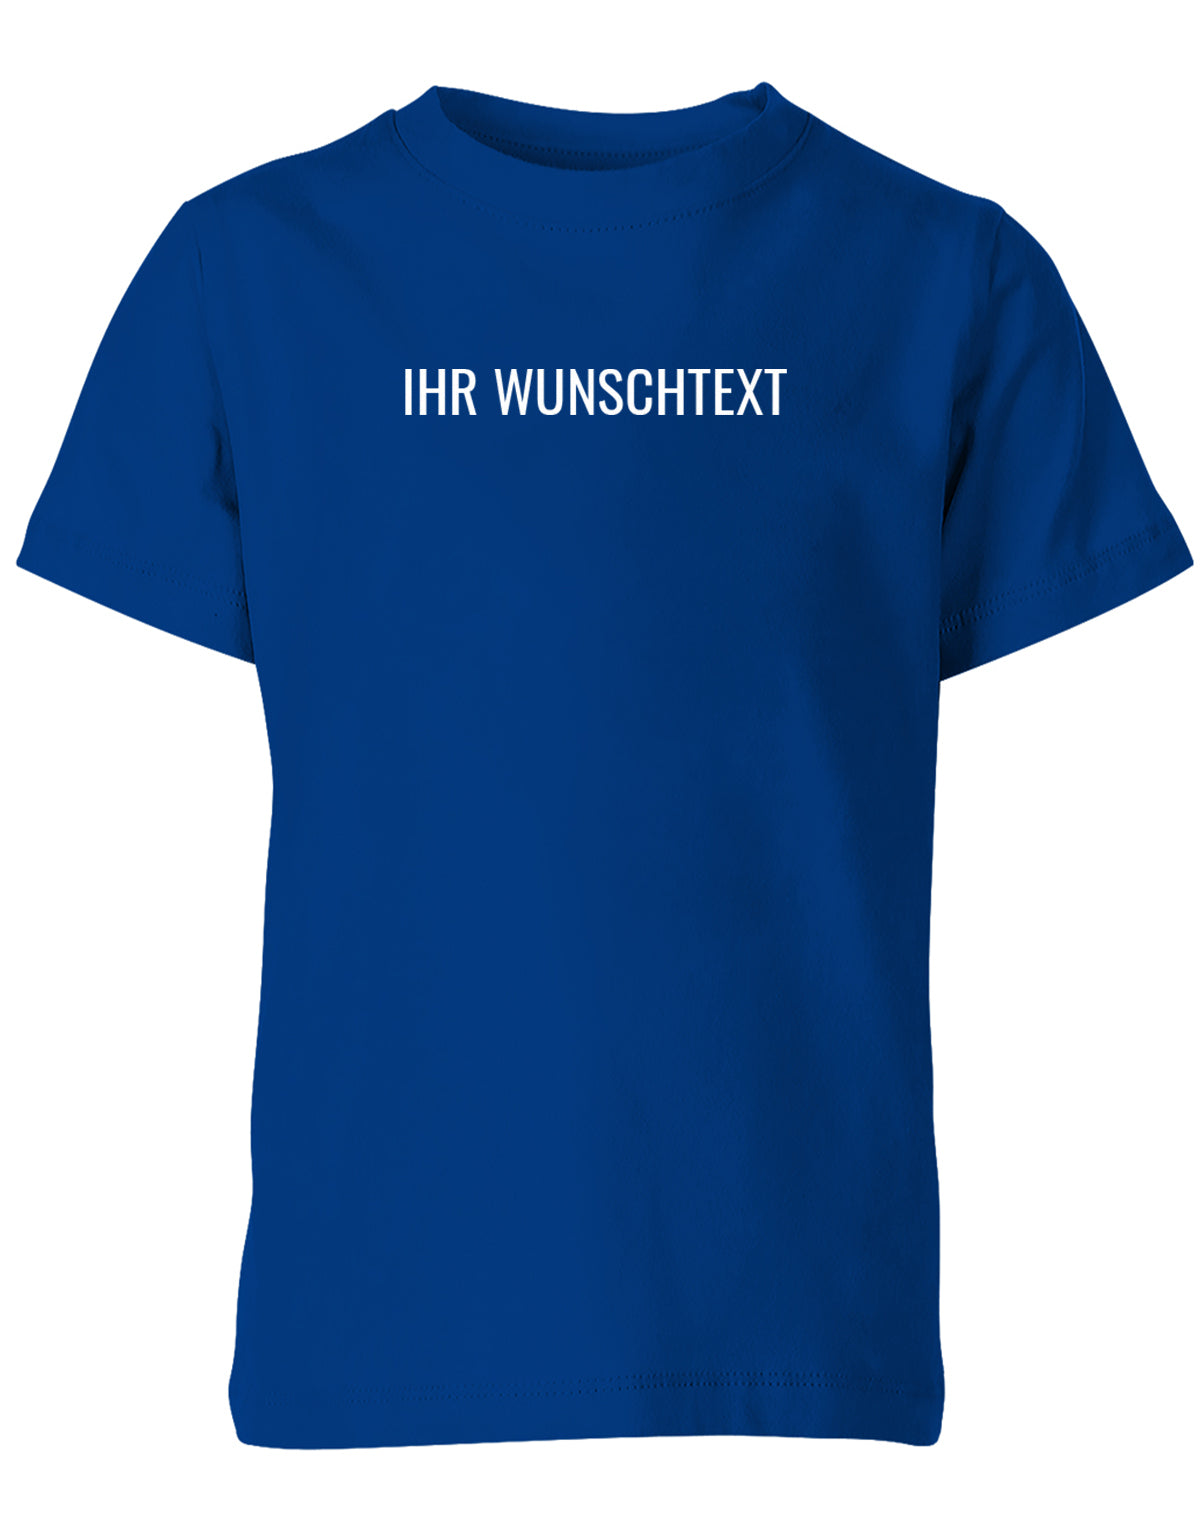 Kinder Tshirt mit Wunschtext.  Minimalistisches Design. Royalblau